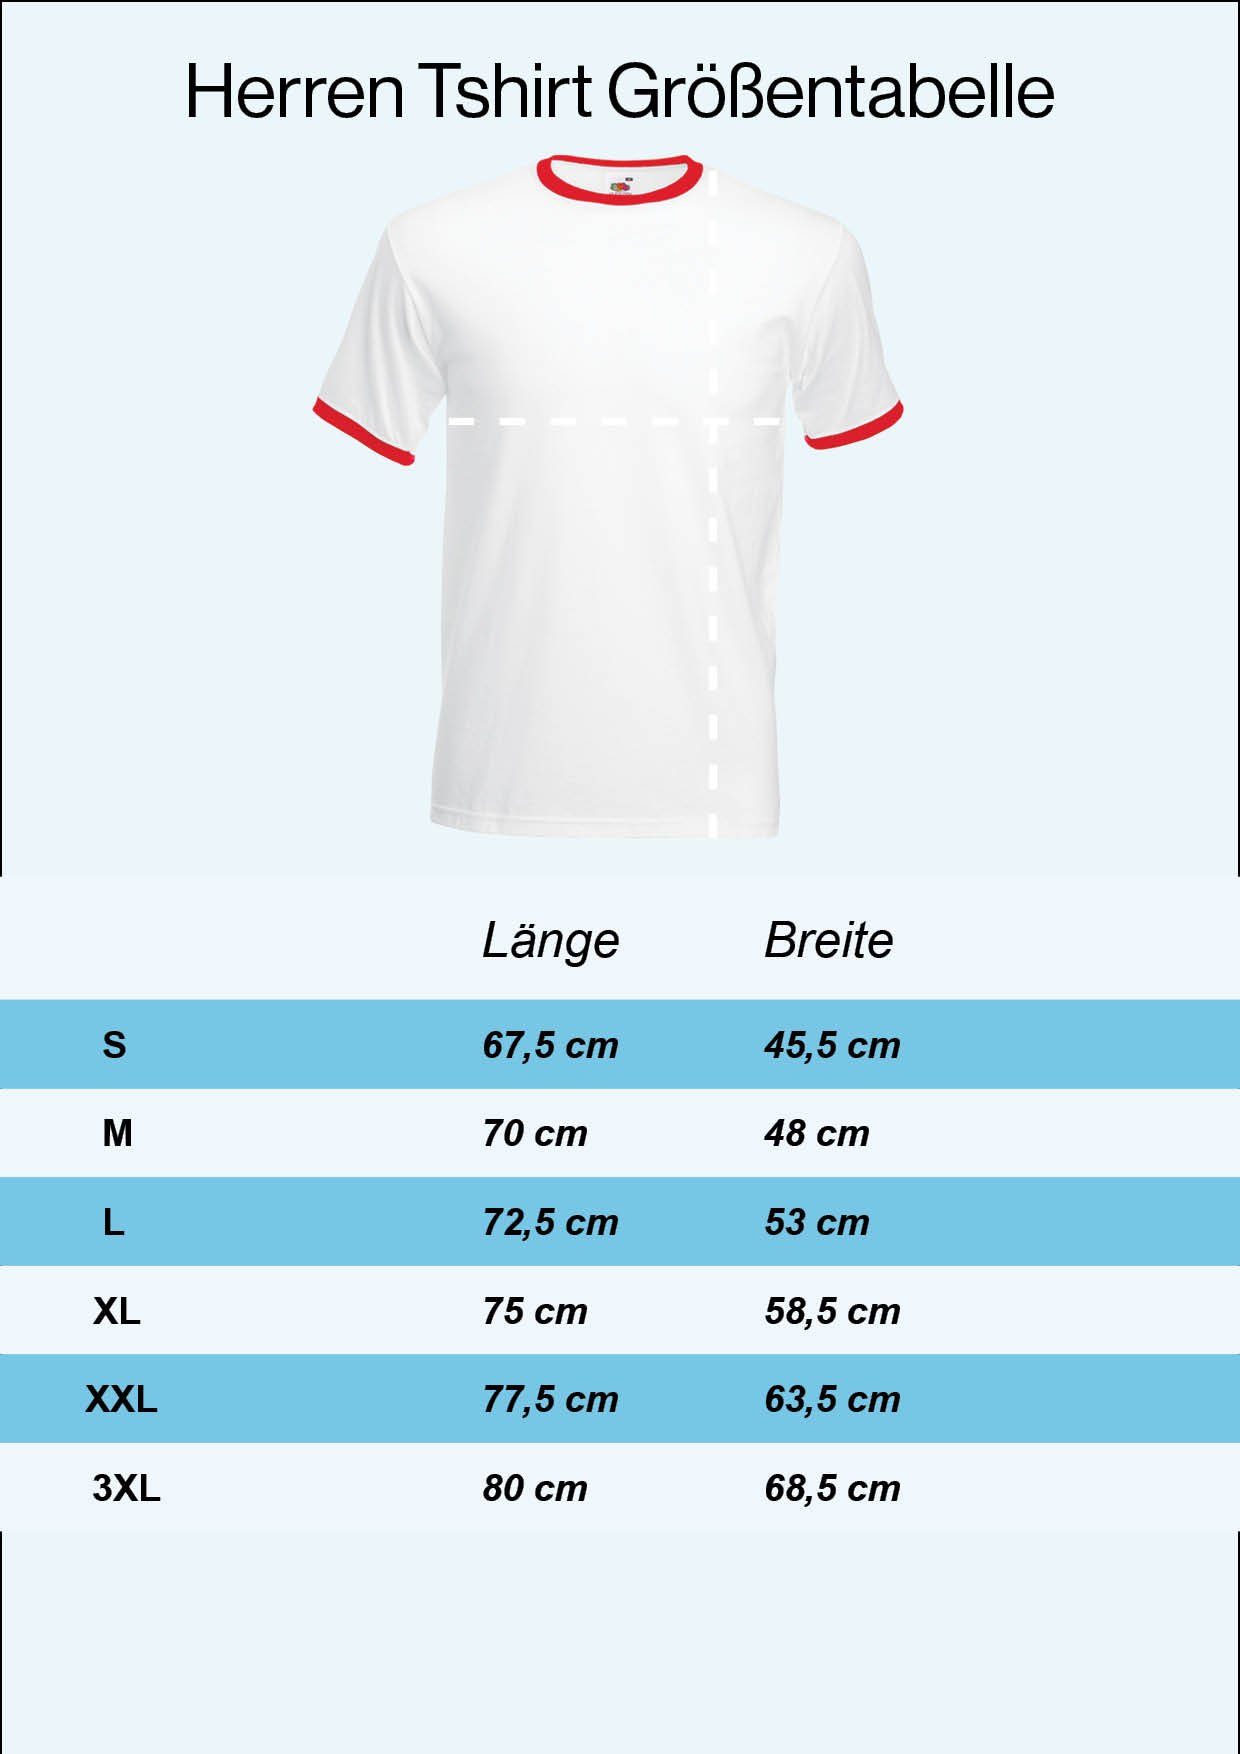 T-Shirt trendigem Look T-Shirt im mit Motiv Designz Herren Youth Weiß Trikot Schweiz Fußball